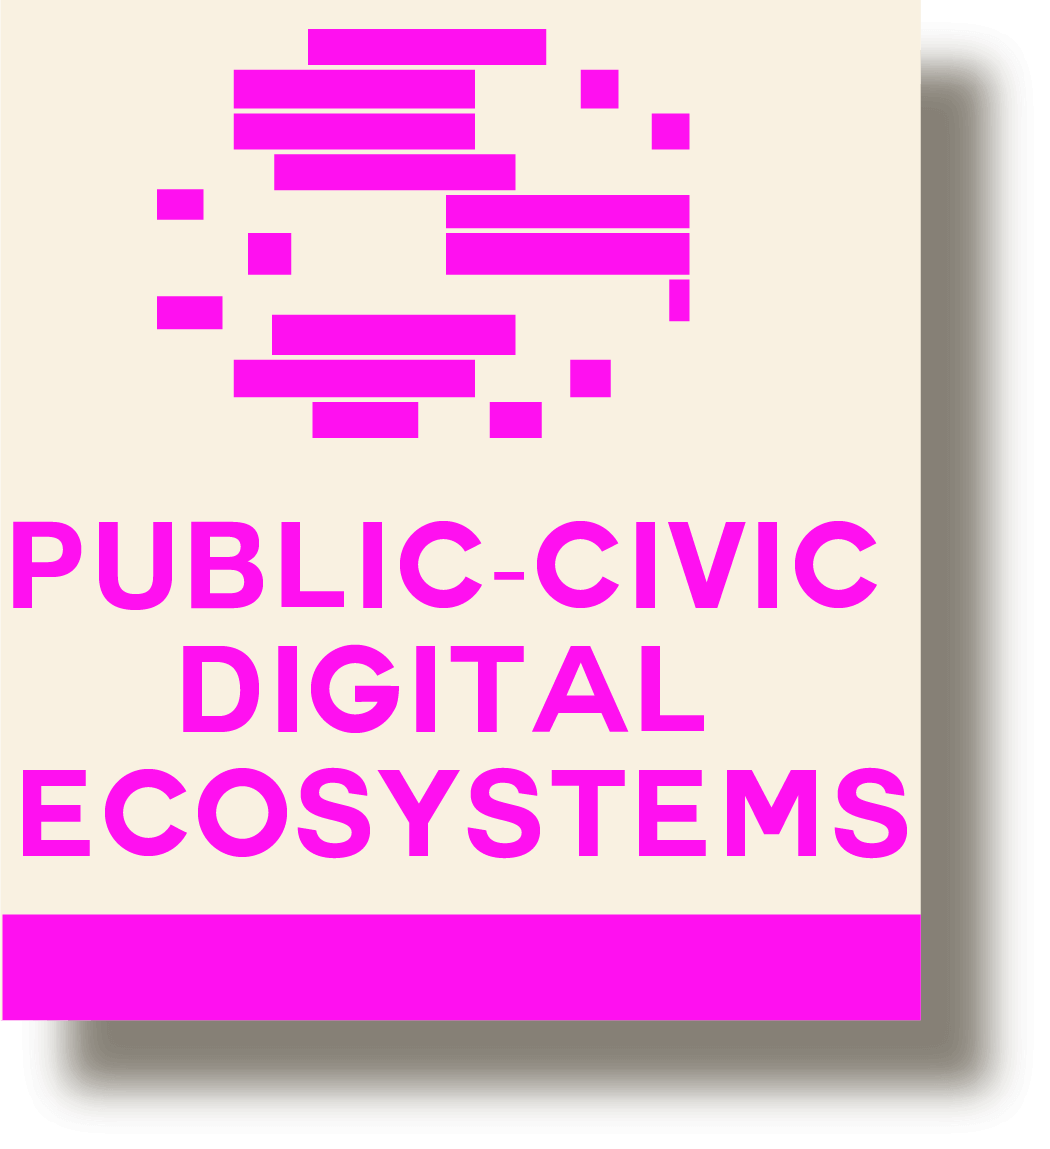 Publiek-collectieve Digitale Ecosystemen